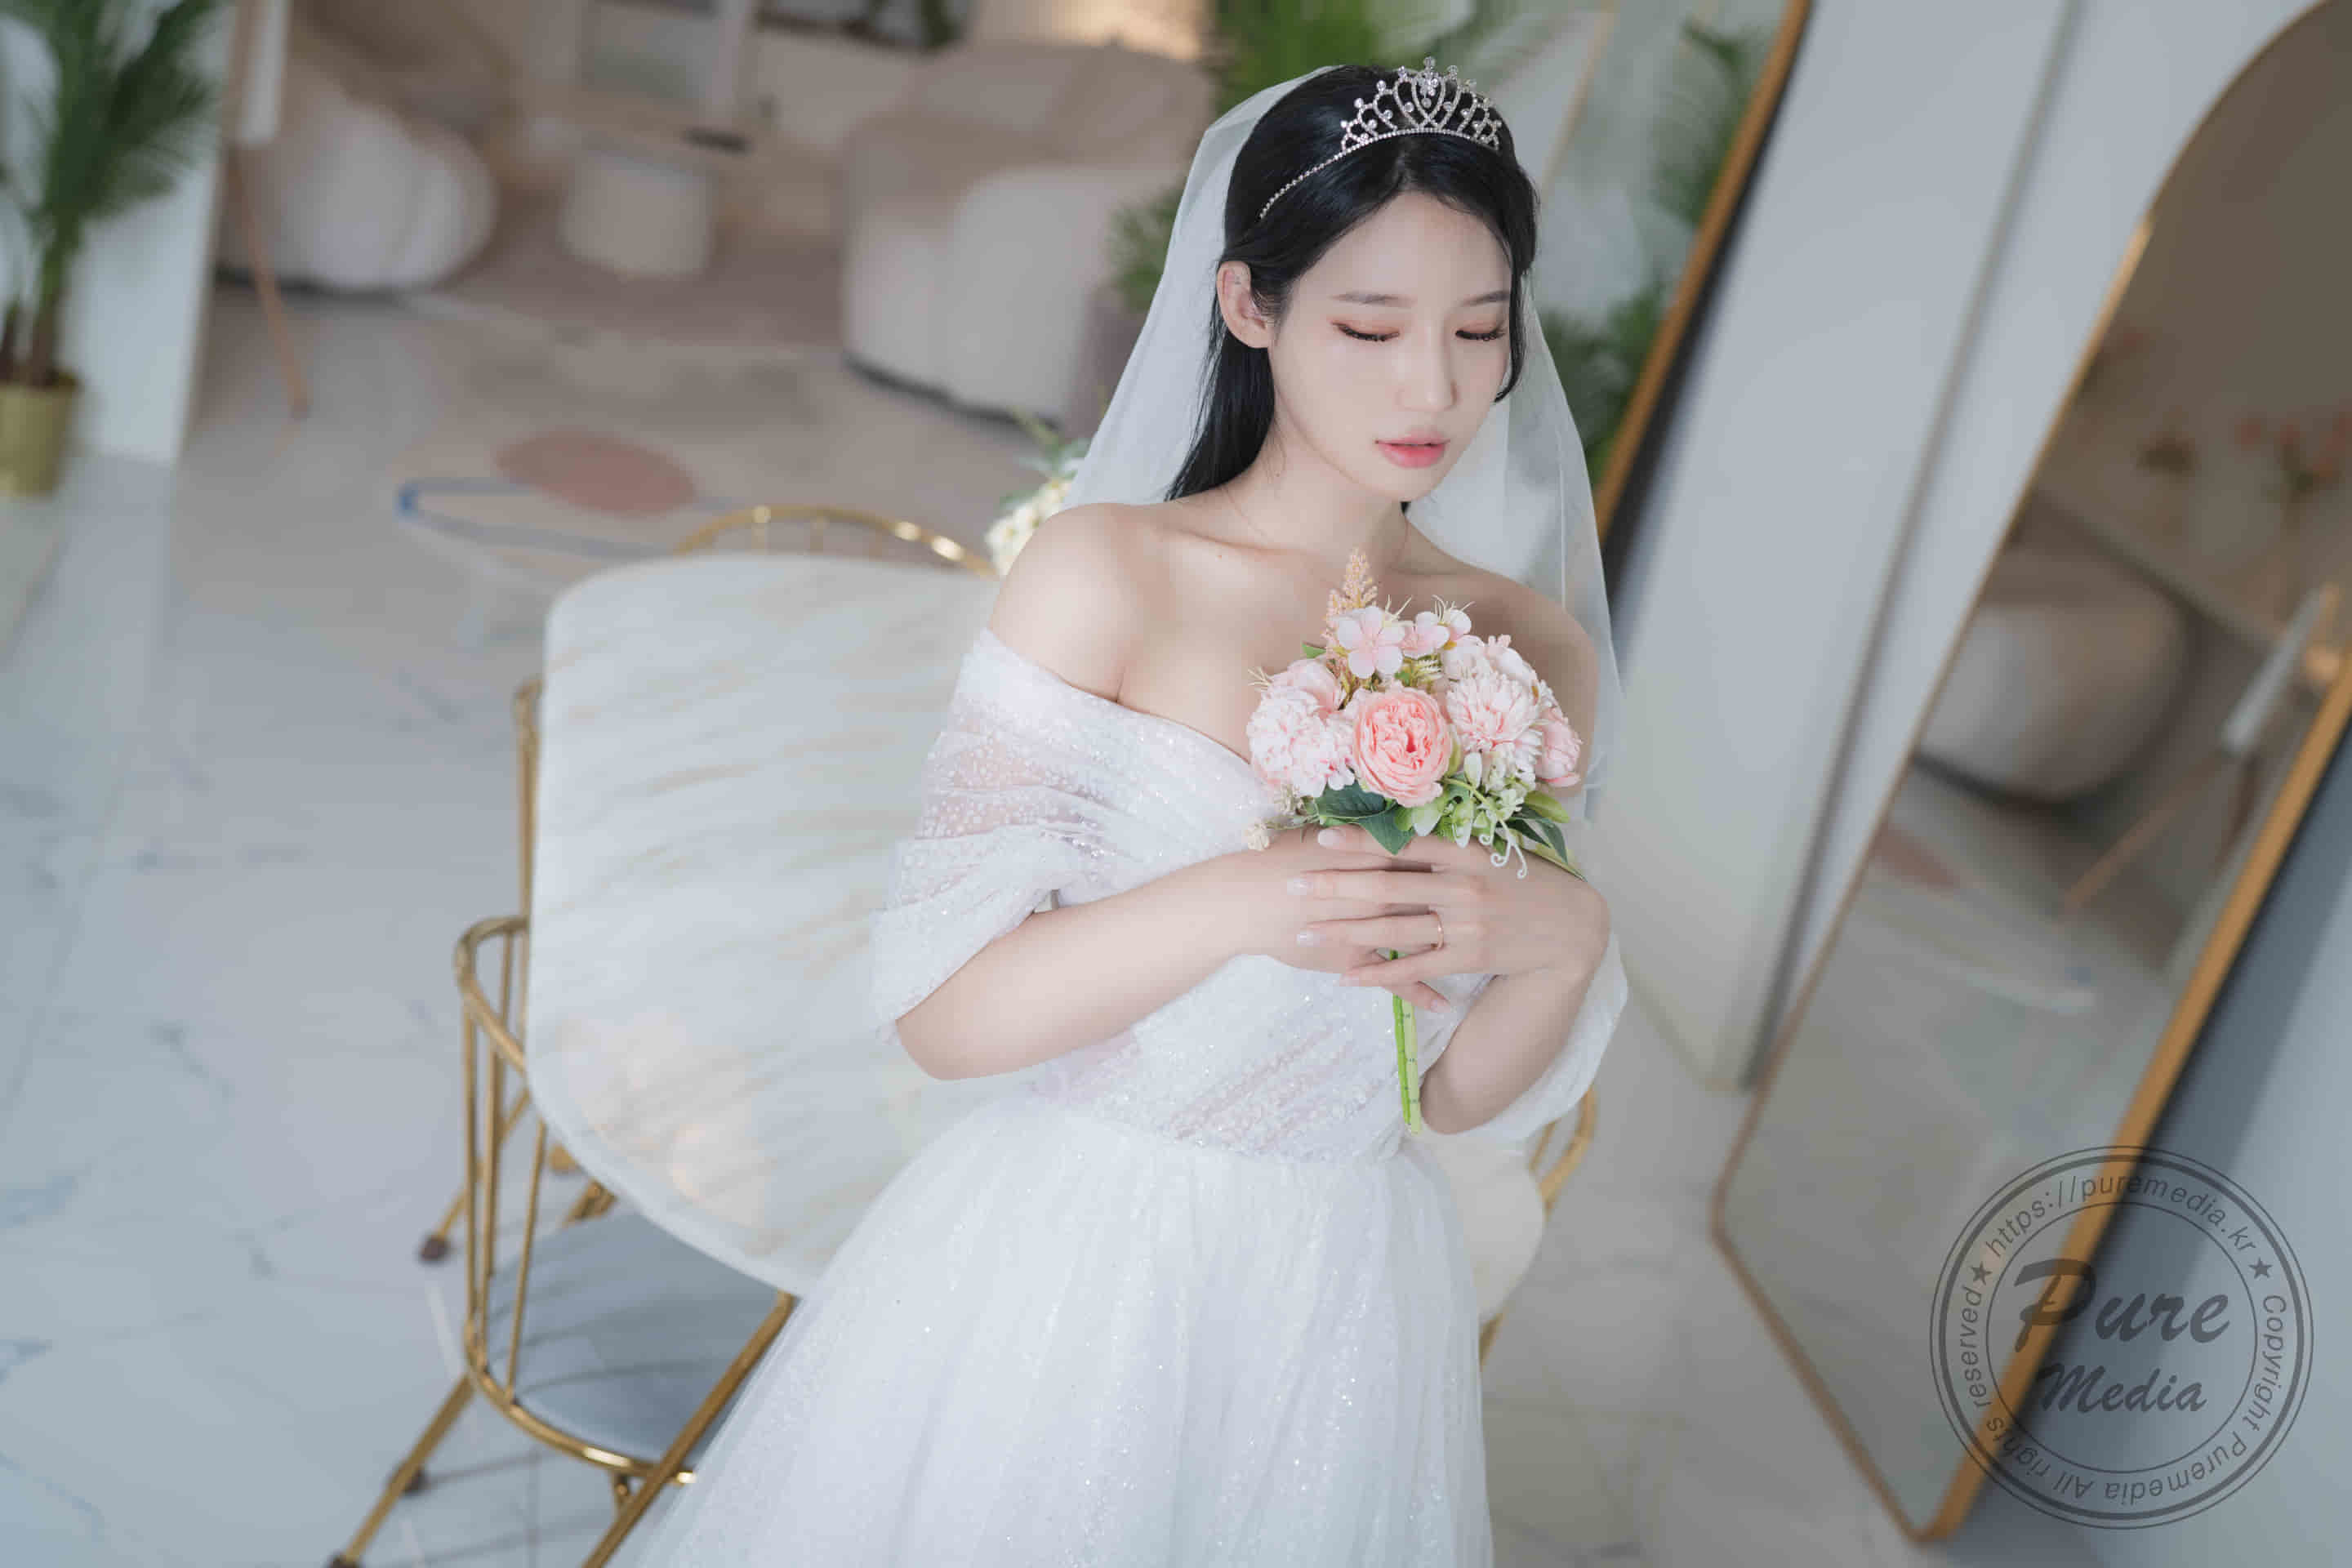 Йеха, главная богиня корейской высококачественной фотографии, стоимостью 40 долларов США, — красивая невеста.